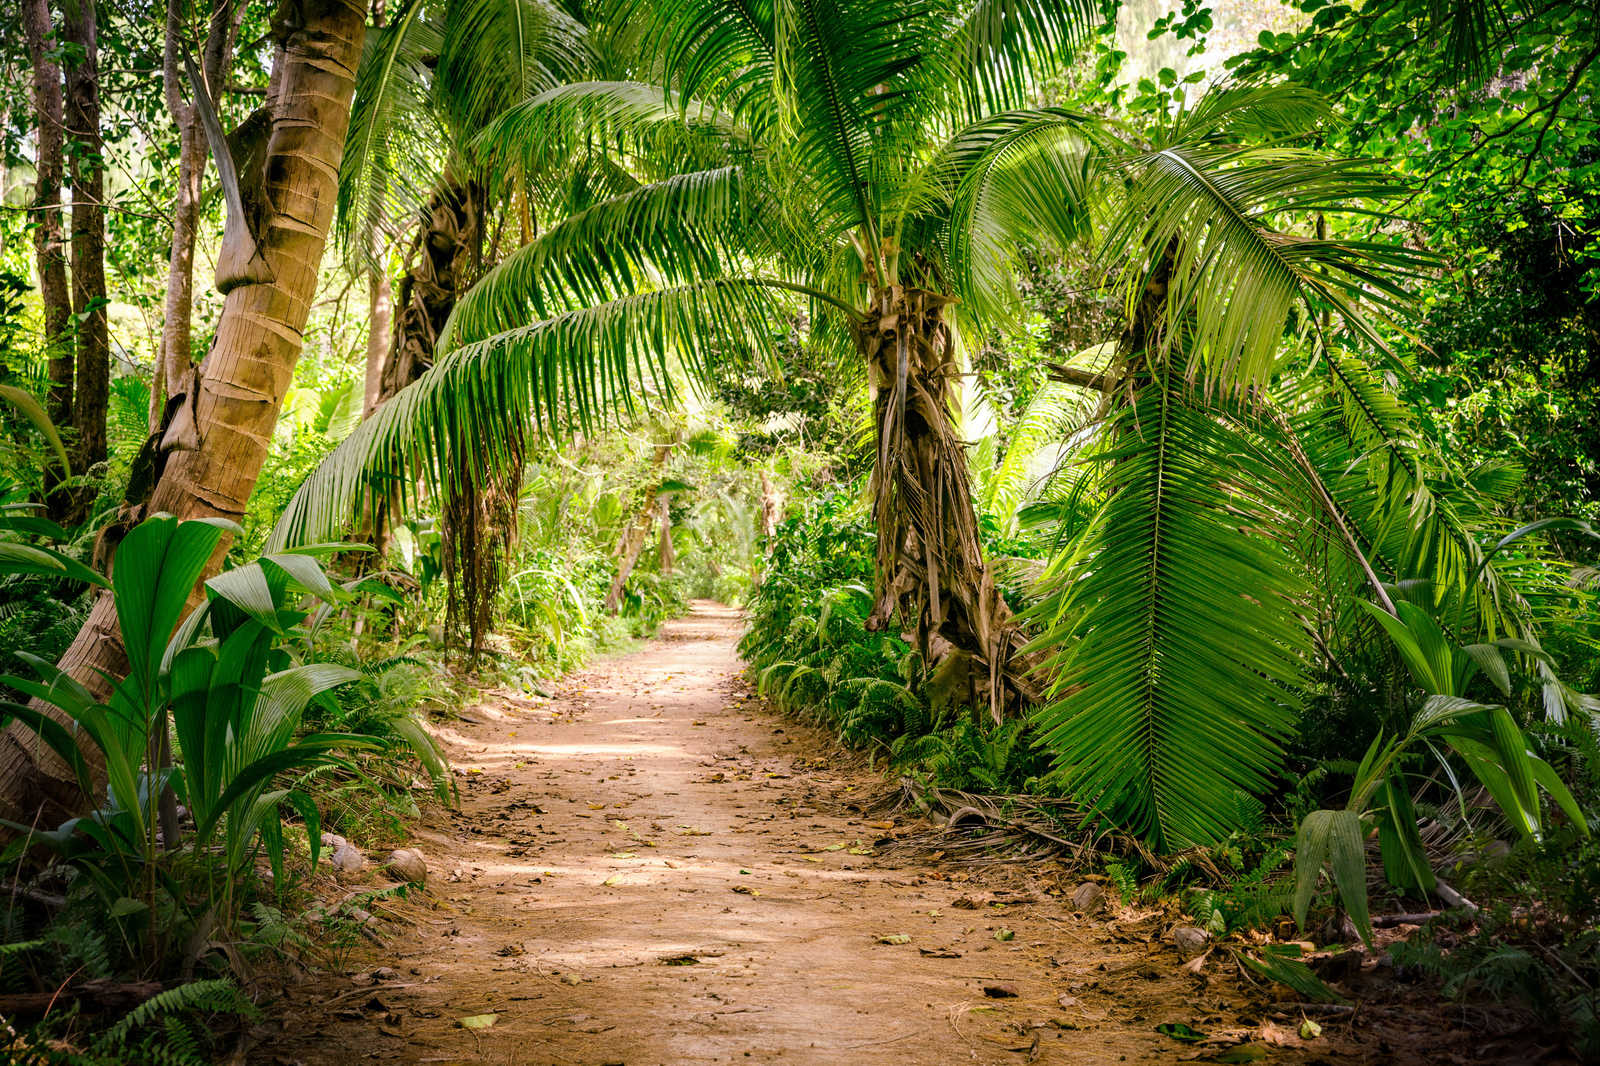             Tela con percorso di palme in un paesaggio tropicale - 0,90 m x 0,60 m
        